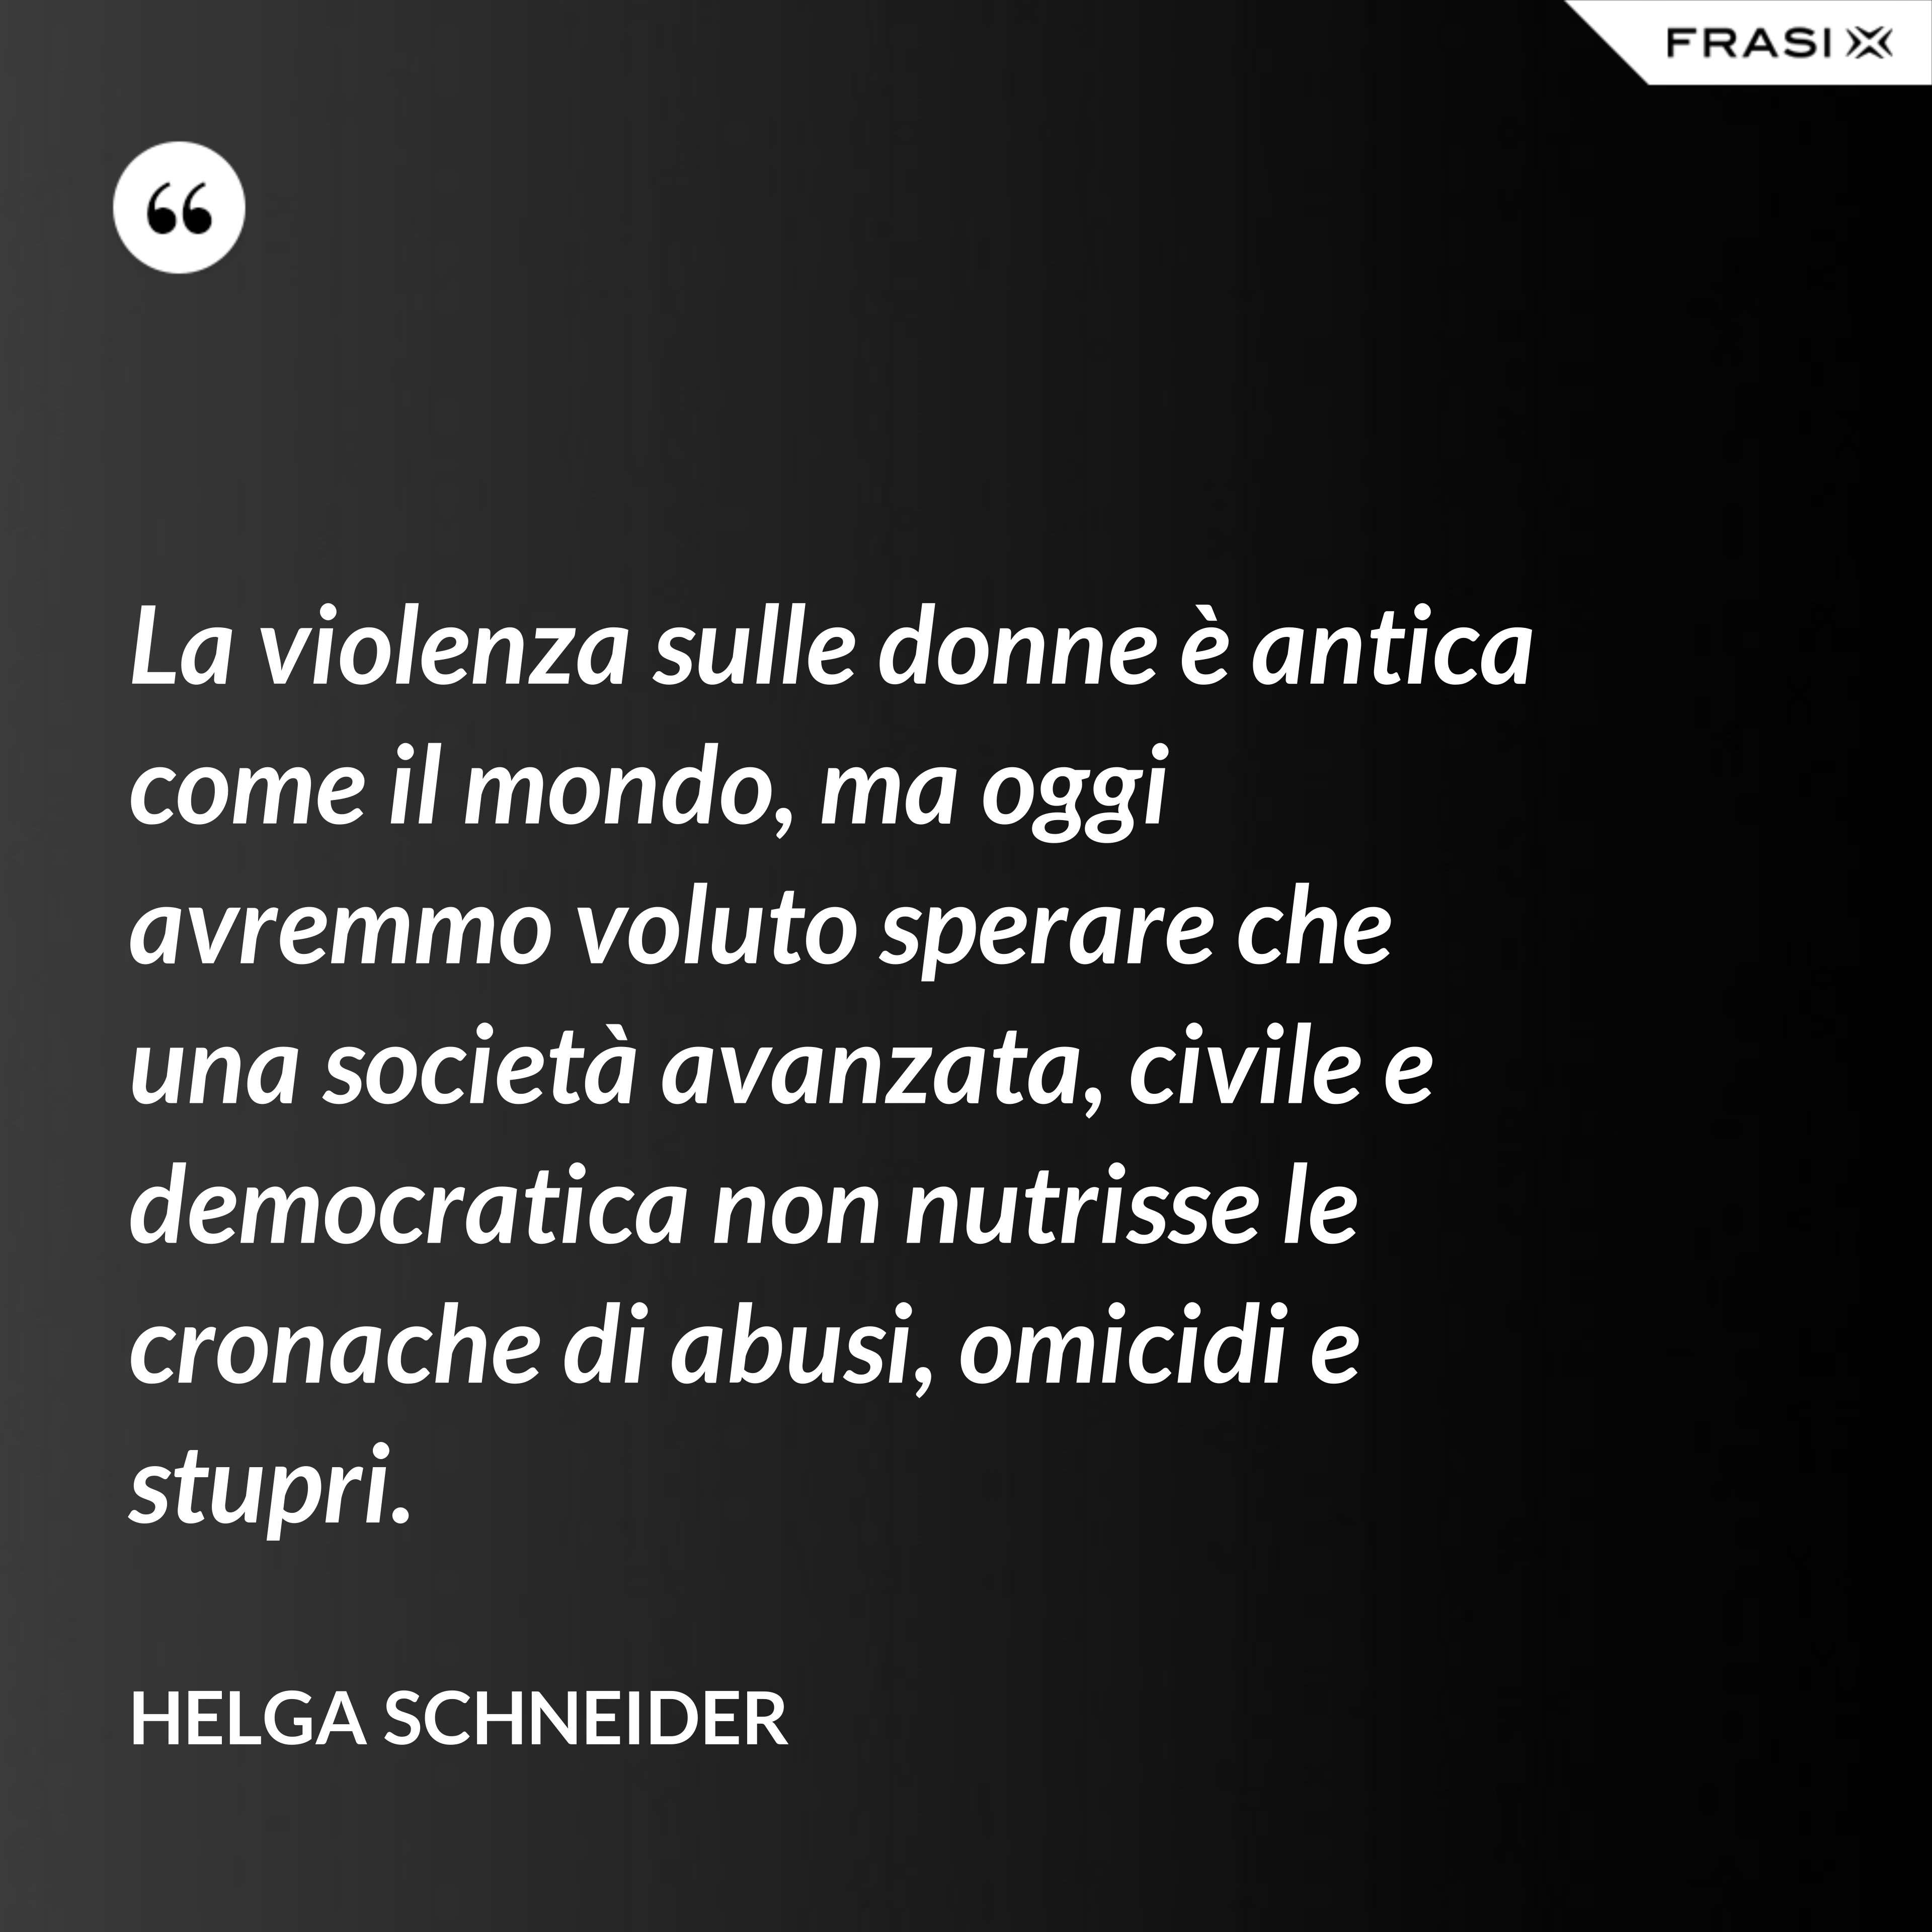 La violenza sulle donne è antica come il mondo, ma oggi avremmo voluto sperare che una società avanzata, civile e democratica non nutrisse le cronache di abusi, omicidi e stupri. - Helga Schneider